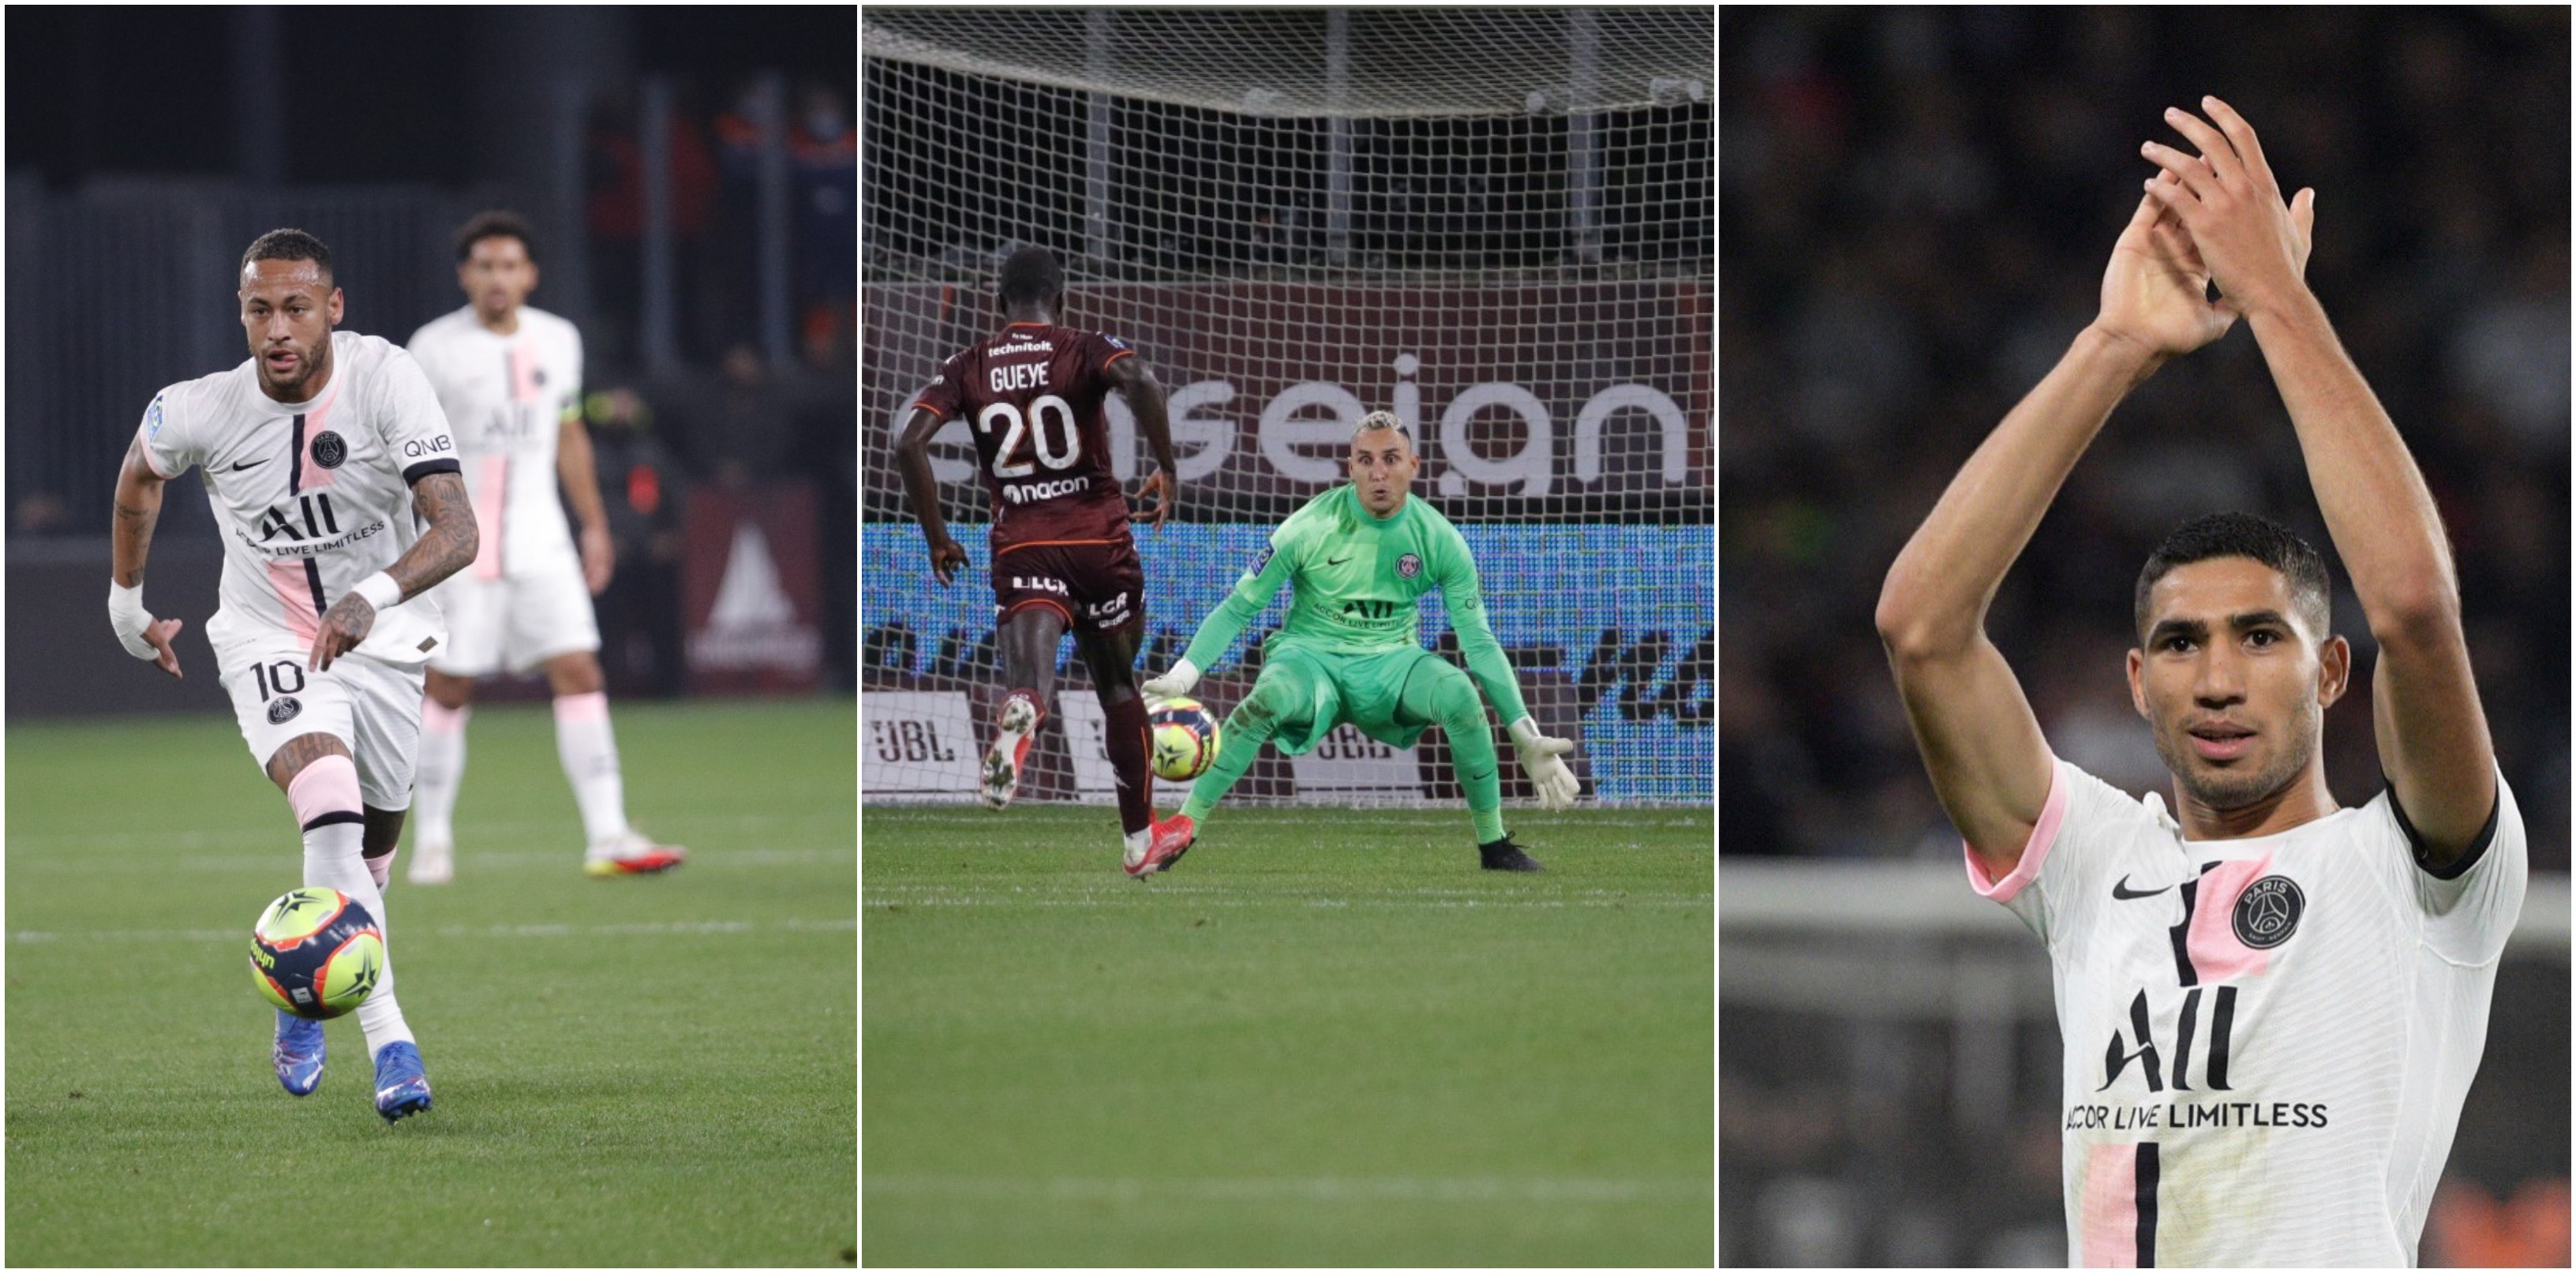 El Paris Saint-Germain sufrió ante el colero Metz FC, y las individualidades volvieron a ser vitales para lograr los tres puntos. Fotos @PSG_espanol